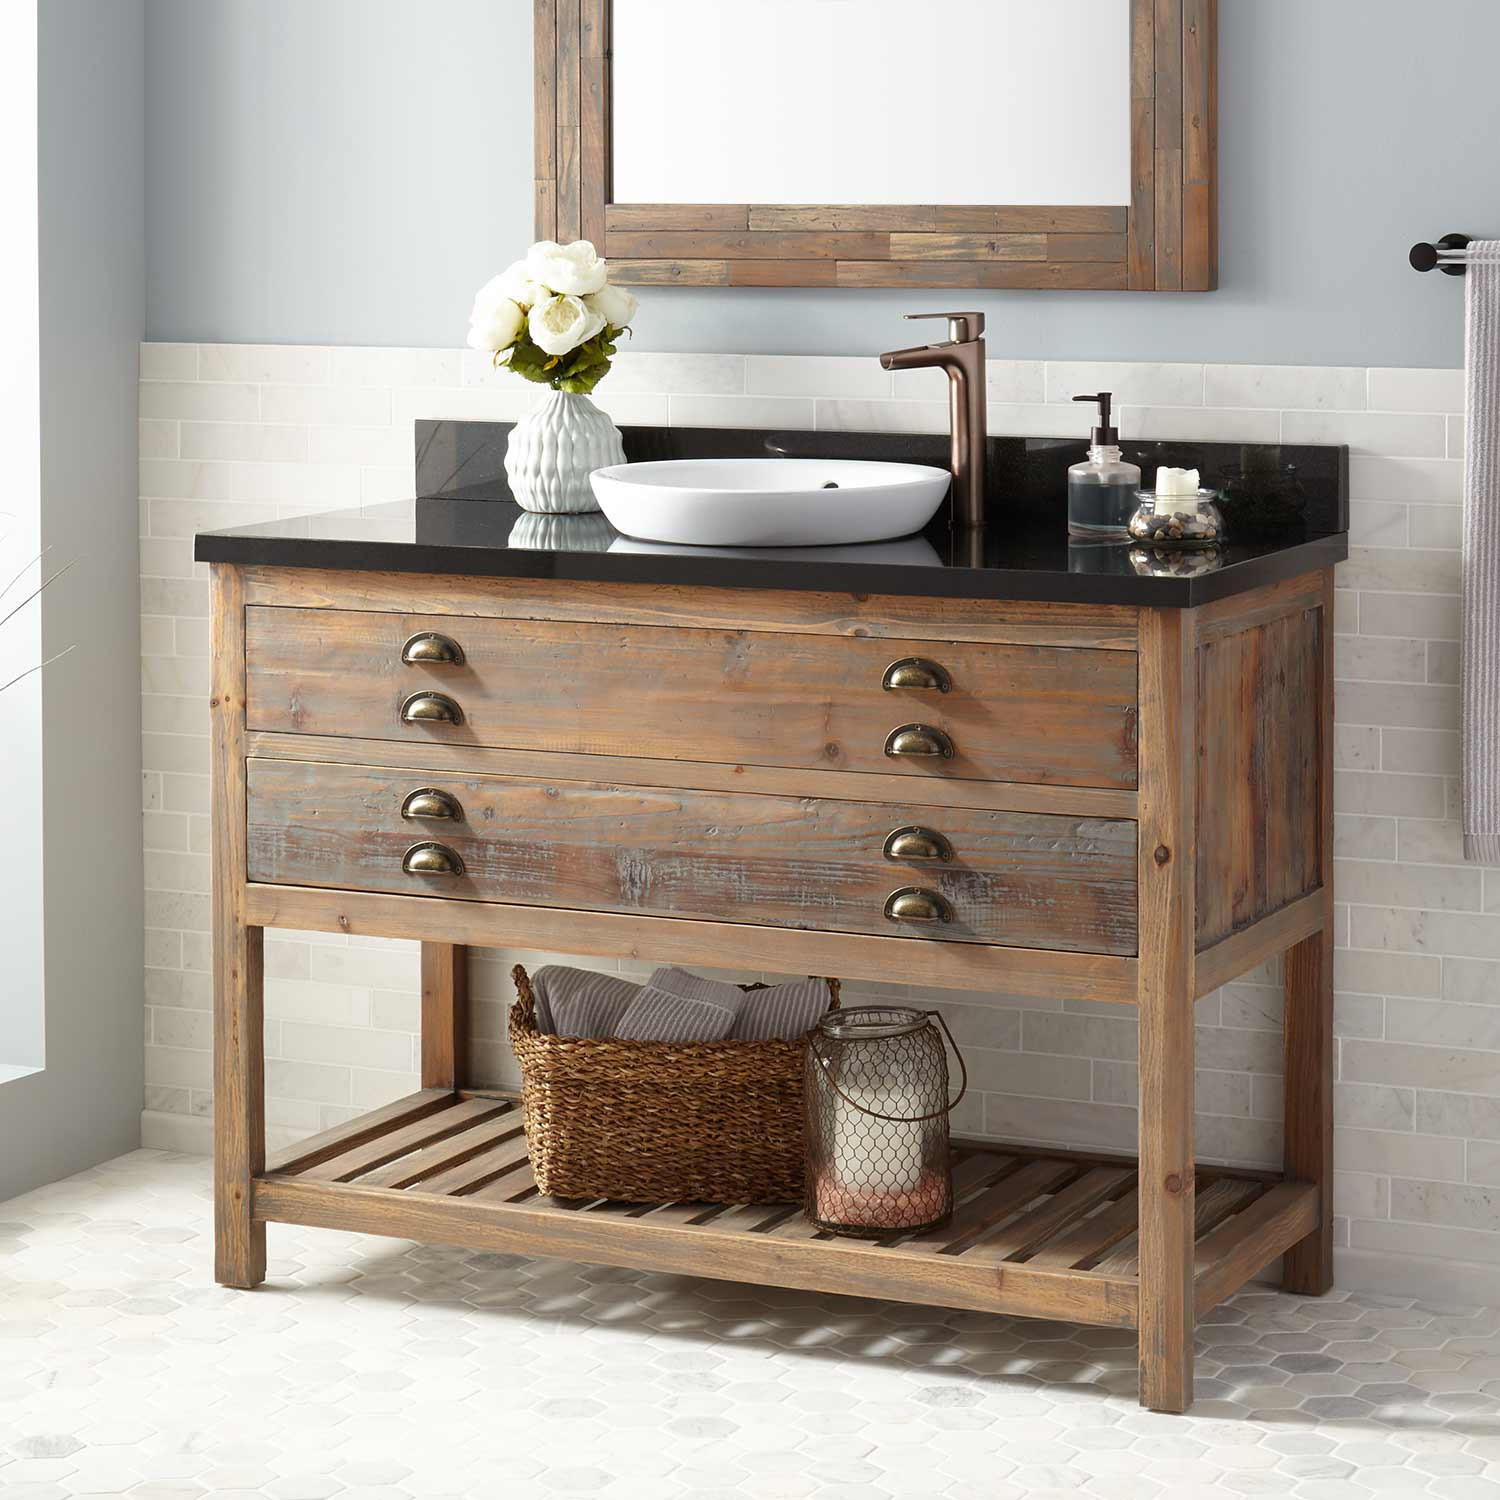 Open Bottom Bathroom Vanities
 Bathroom Attractive Weathered Wood Vanity For Your